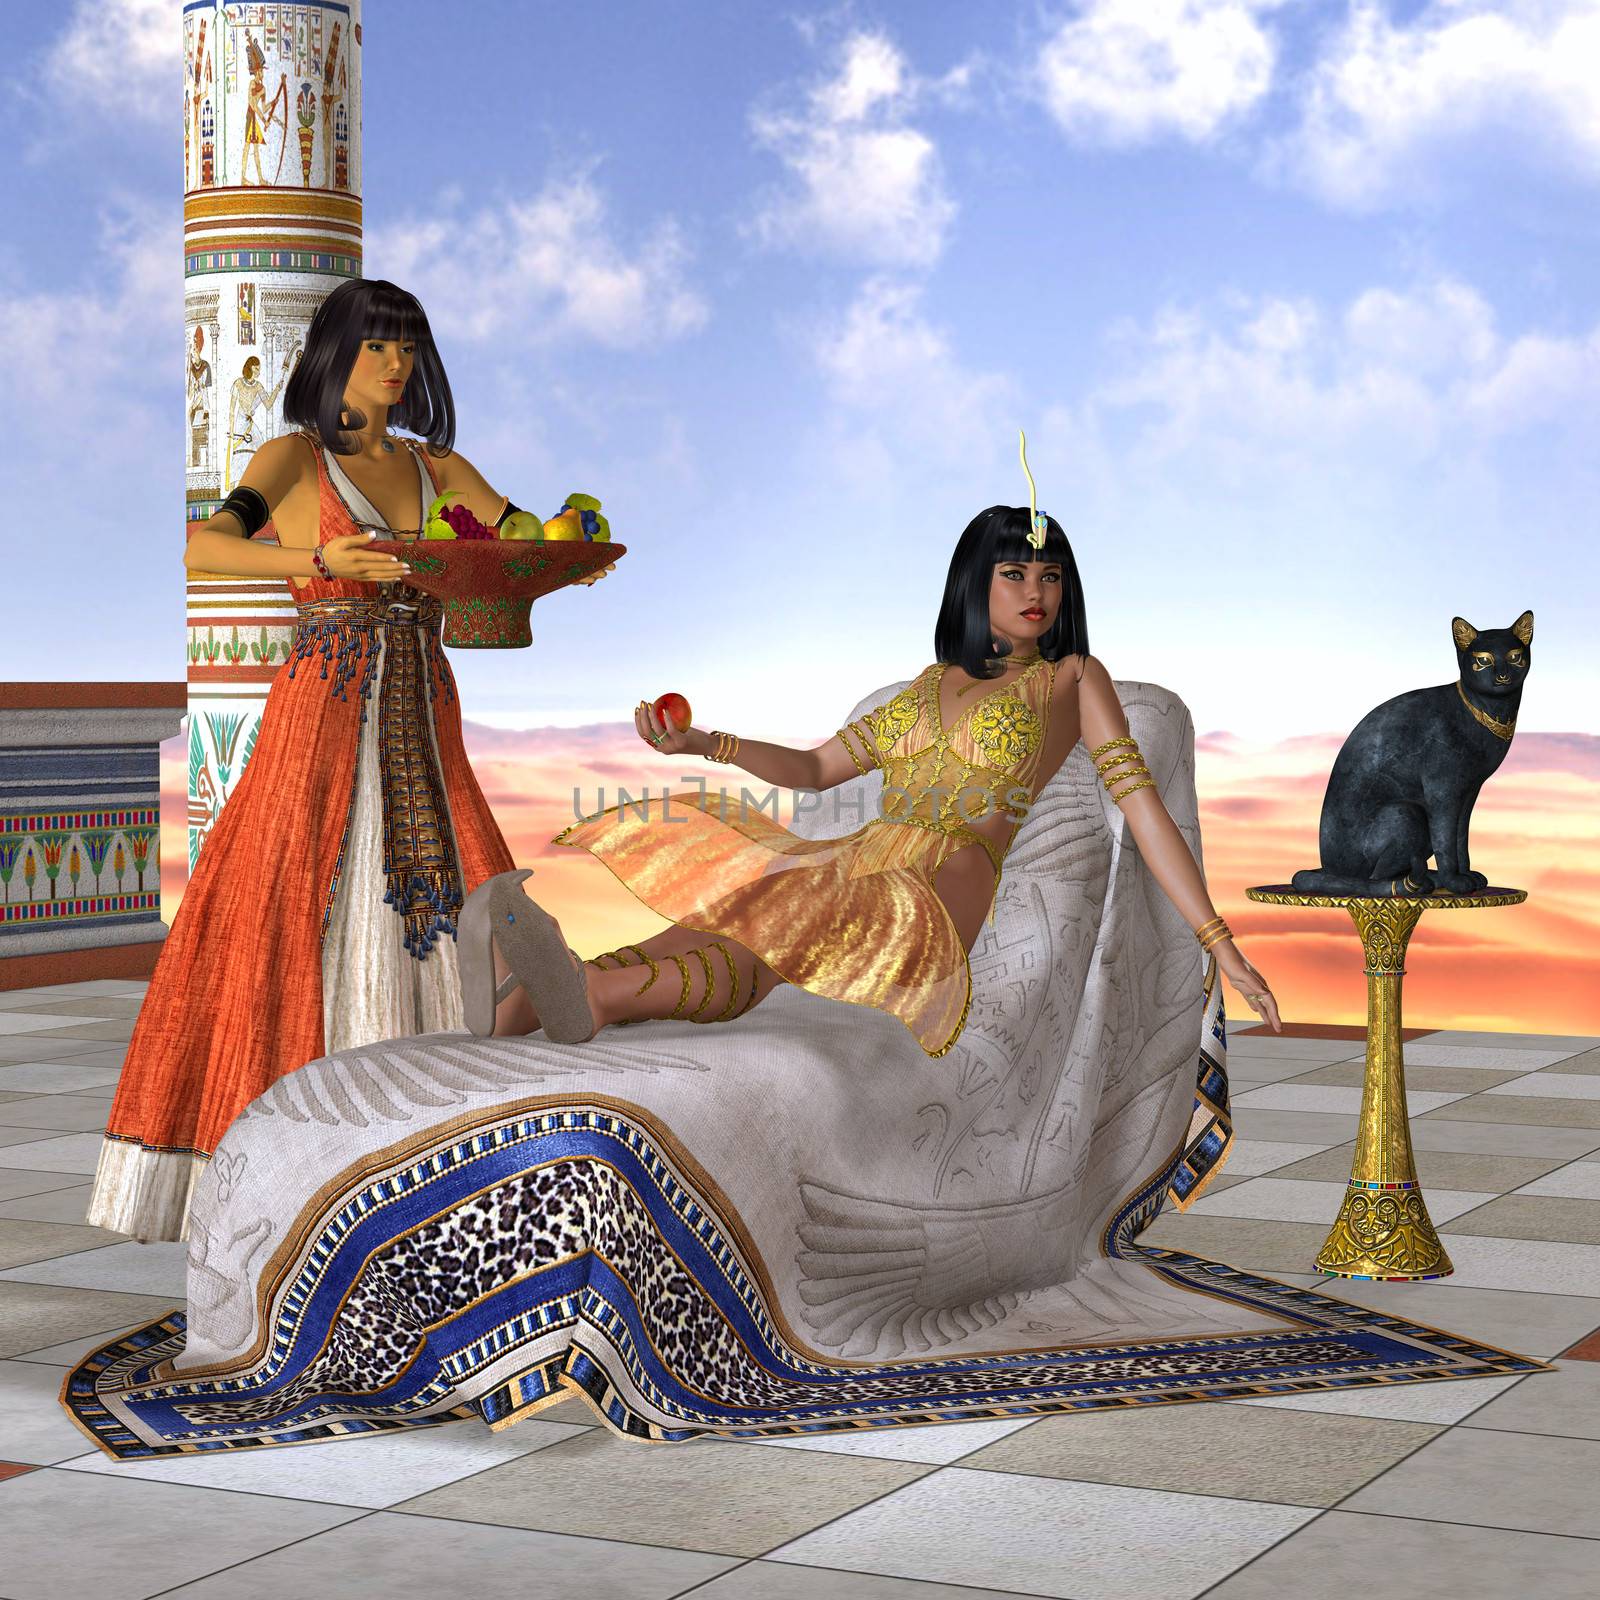 Egyptian Cleopatra by Catmando